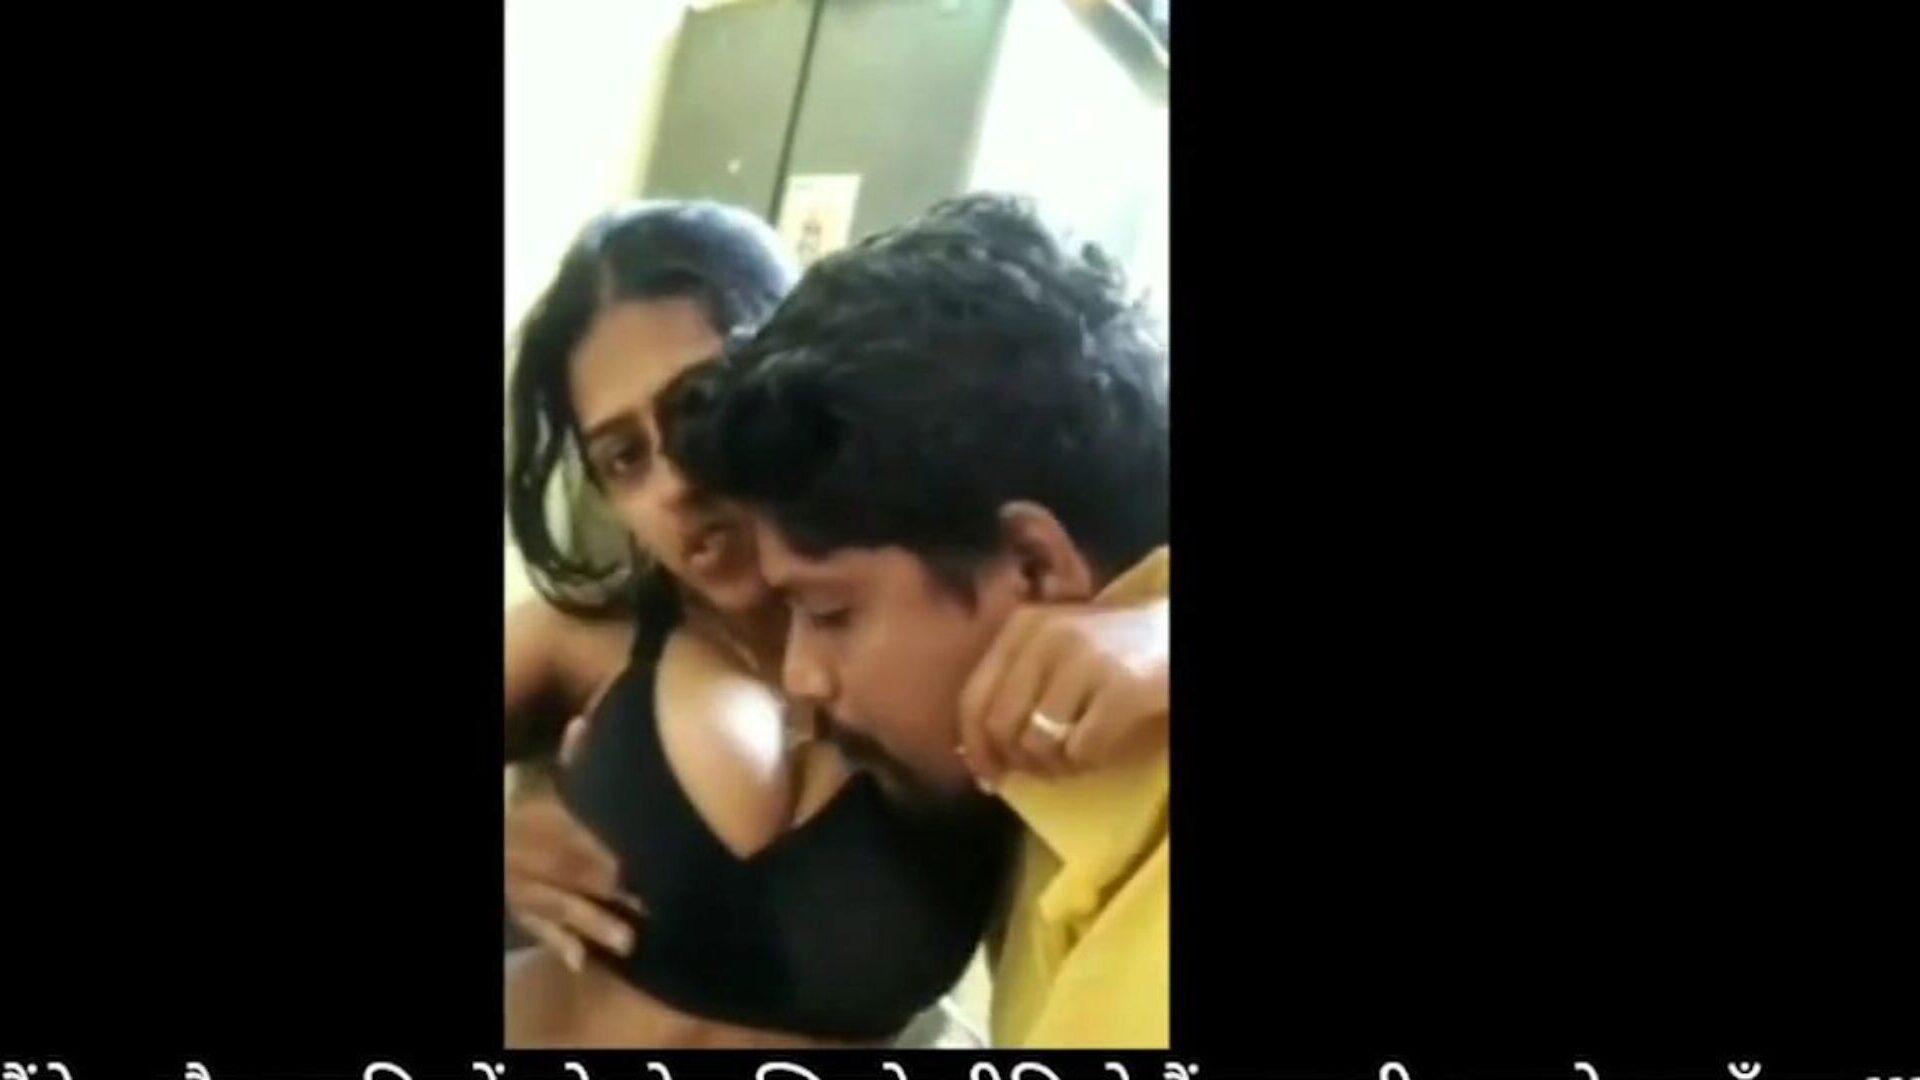 bhabhi devar domowa zabawa z seksem podczas blokady: darmowe porno hd fa oglądaj bhabhi devar domowa zabawa z seksem podczas odcinka blokady na xhamster - ostateczne archiwum darmowych indyjskich darmowych filmów porno w domu HD XXX